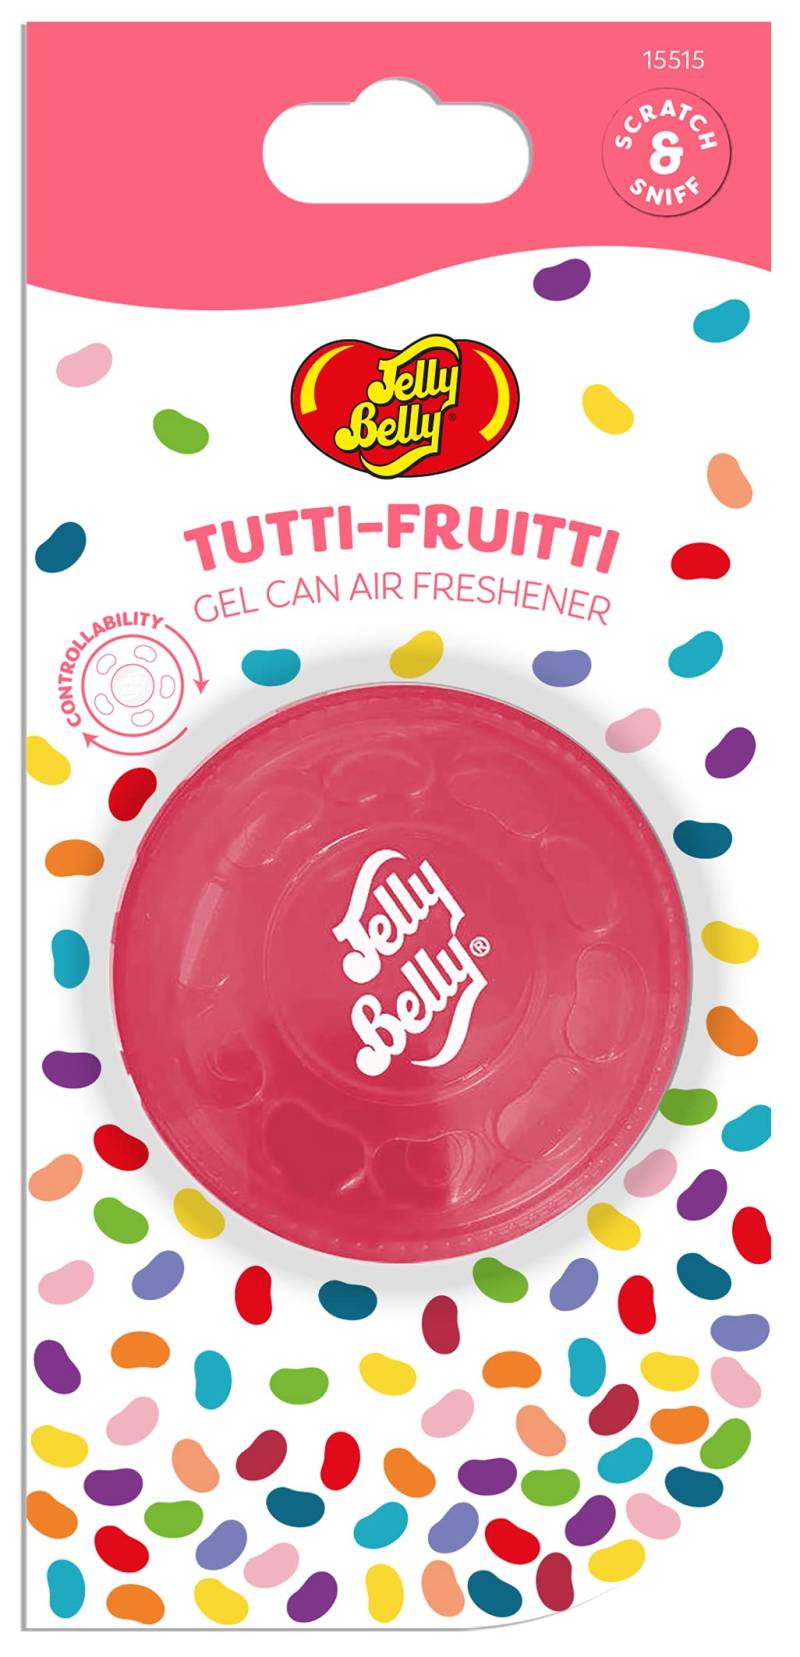 AUTOCARE JELLY BELLY Belly Lufterfrischer-Gel-Dose 15515A mit Tutti Fruitti-Duft von Jelly Belly